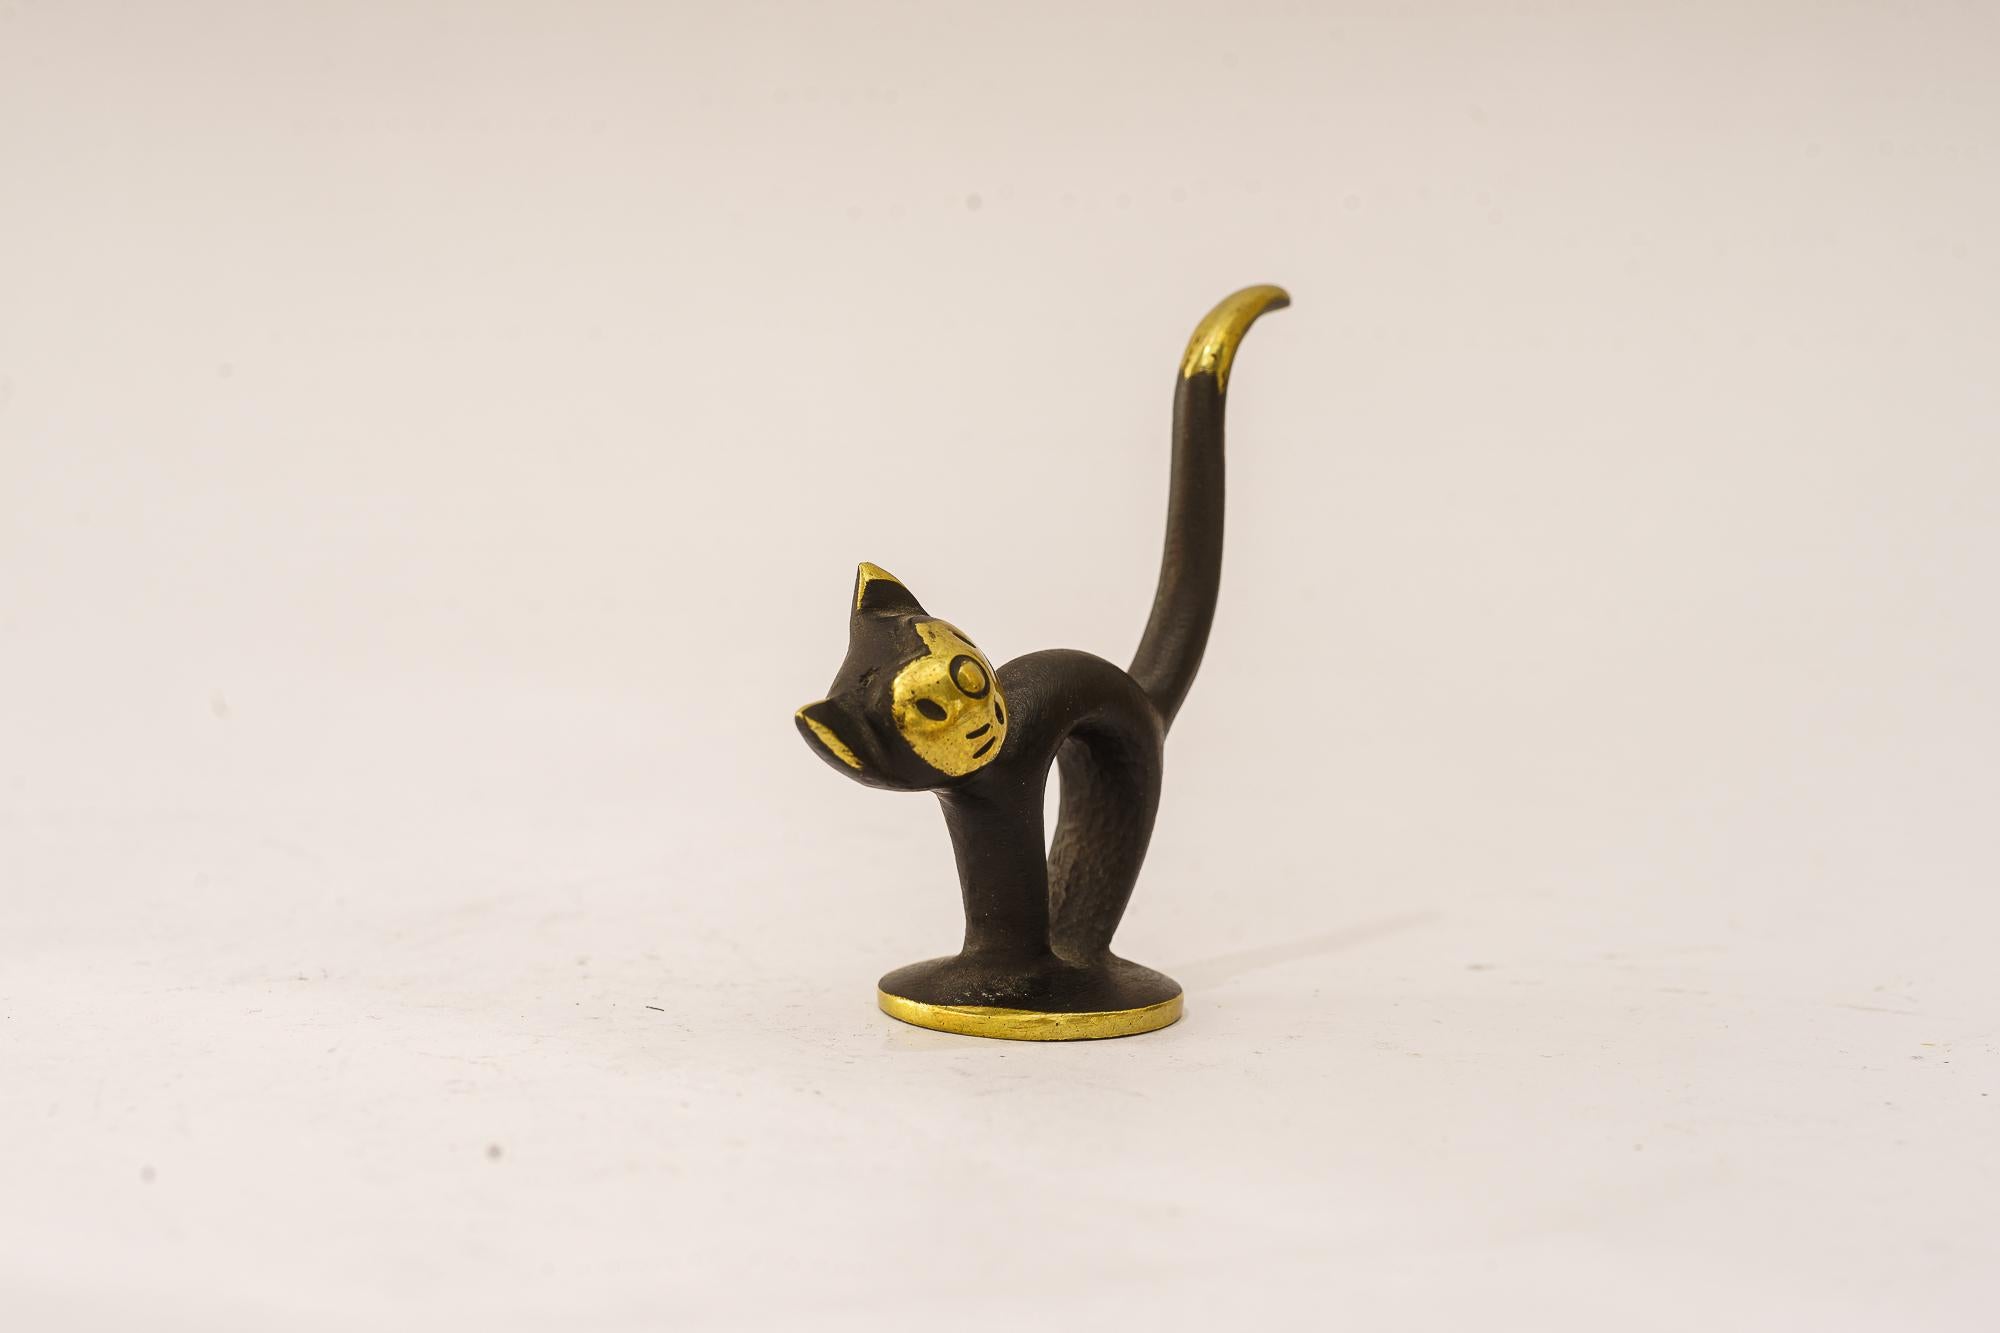 Walter bosse for herta Baller cat figurine vienna around 1950s
Original condition